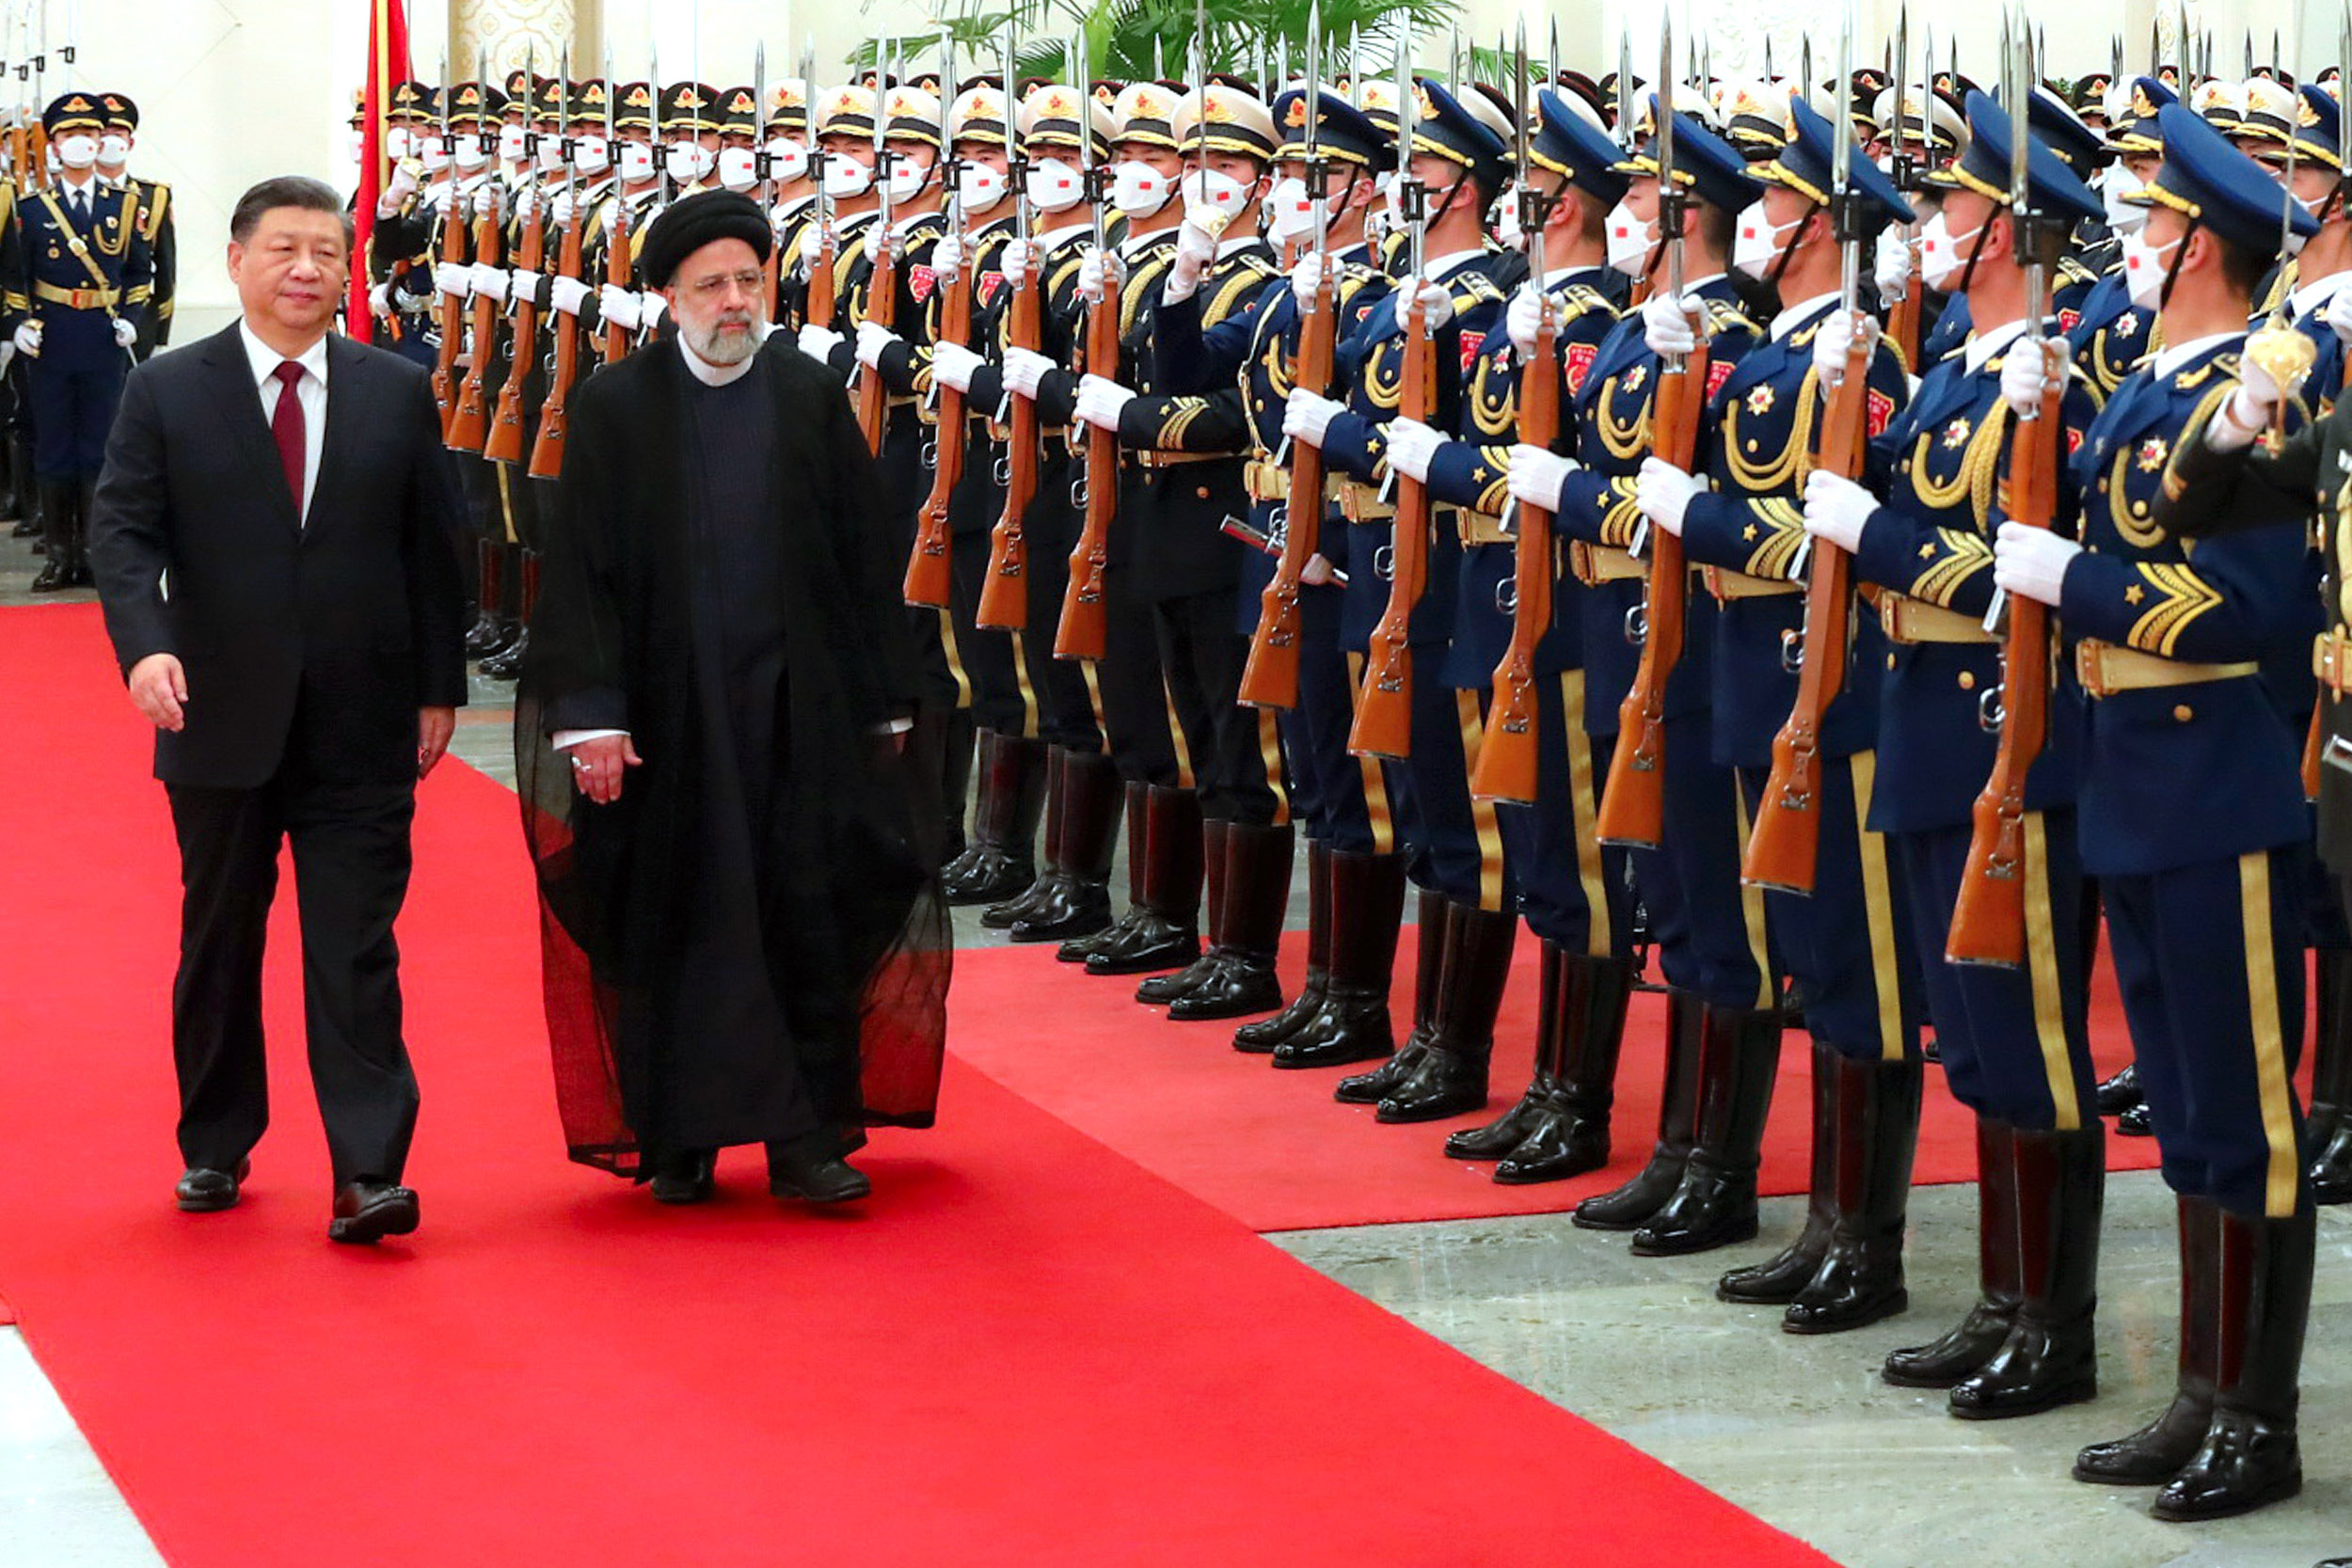 ایران و چین دوستان دوران سخت هستند